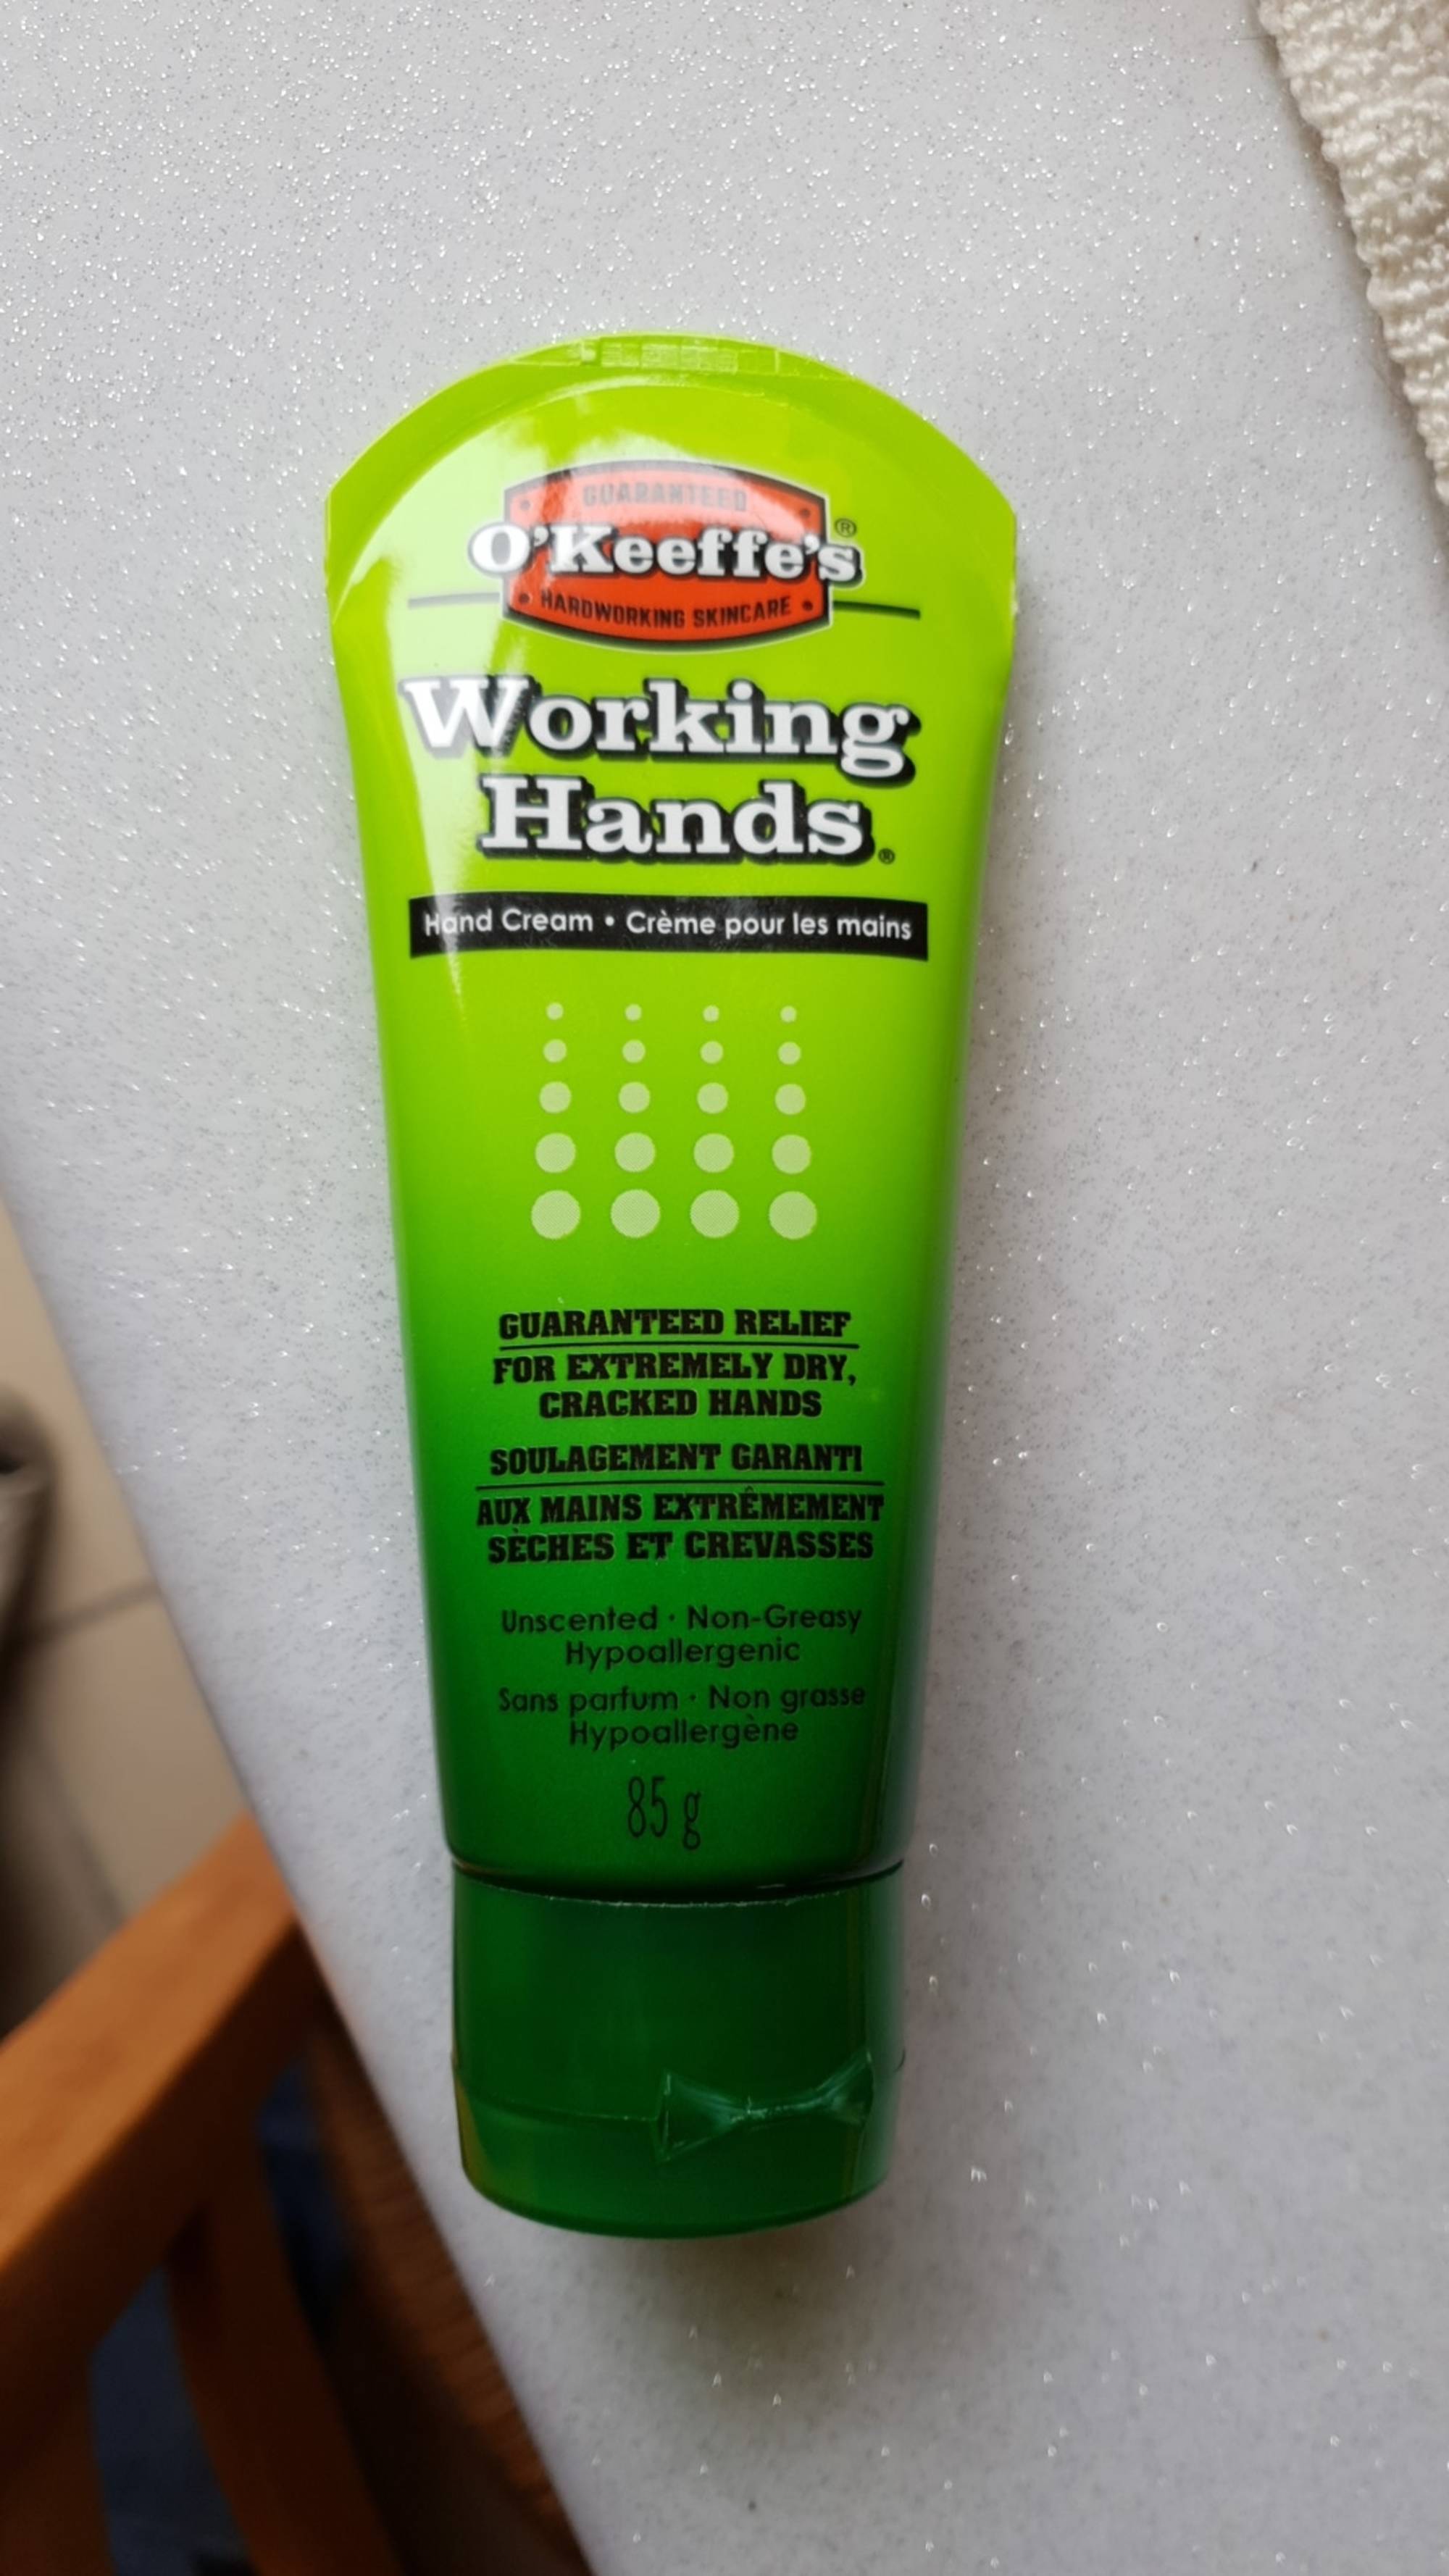 O'KEEFFE'S - Working hands - Crème pour les mains